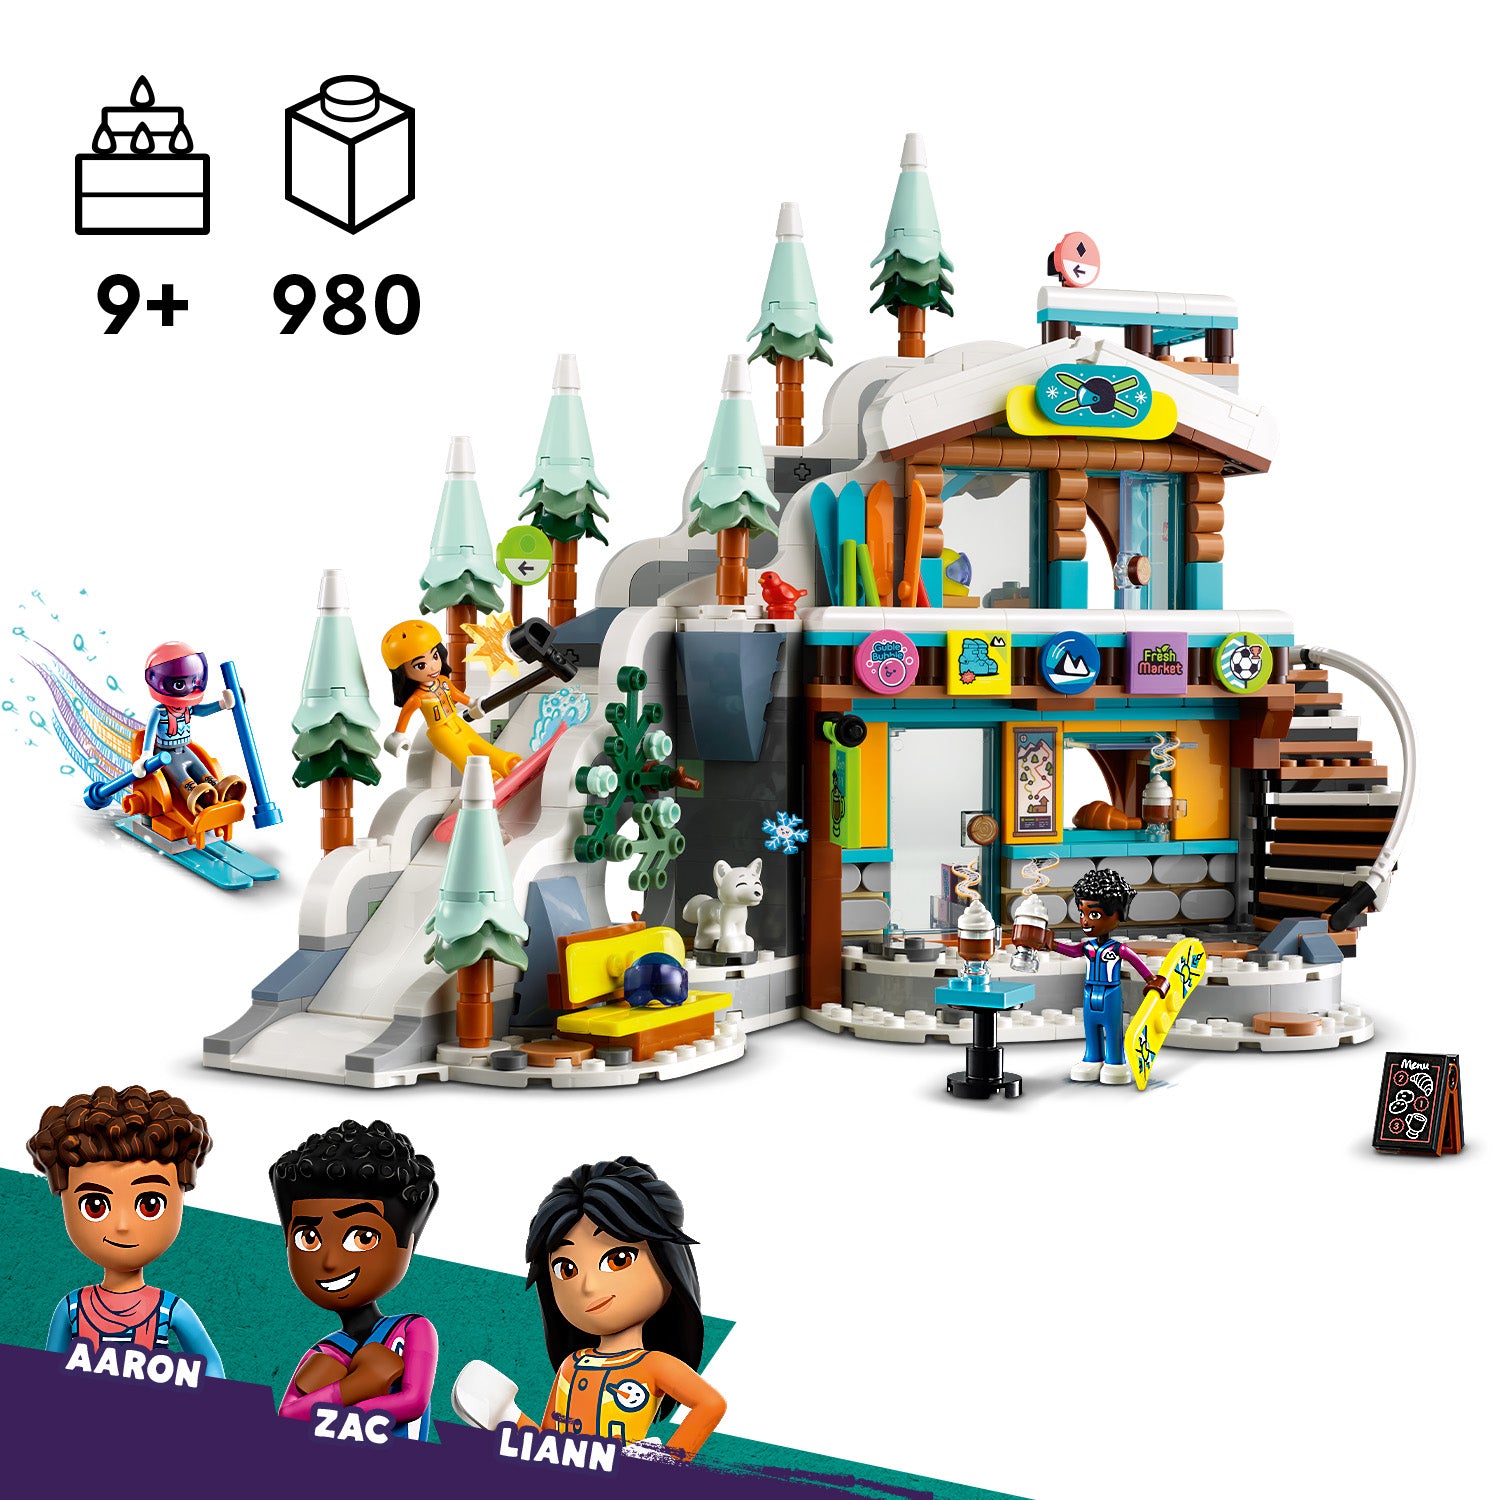 Lego 41756 Holiday Sik Slope & Cafe